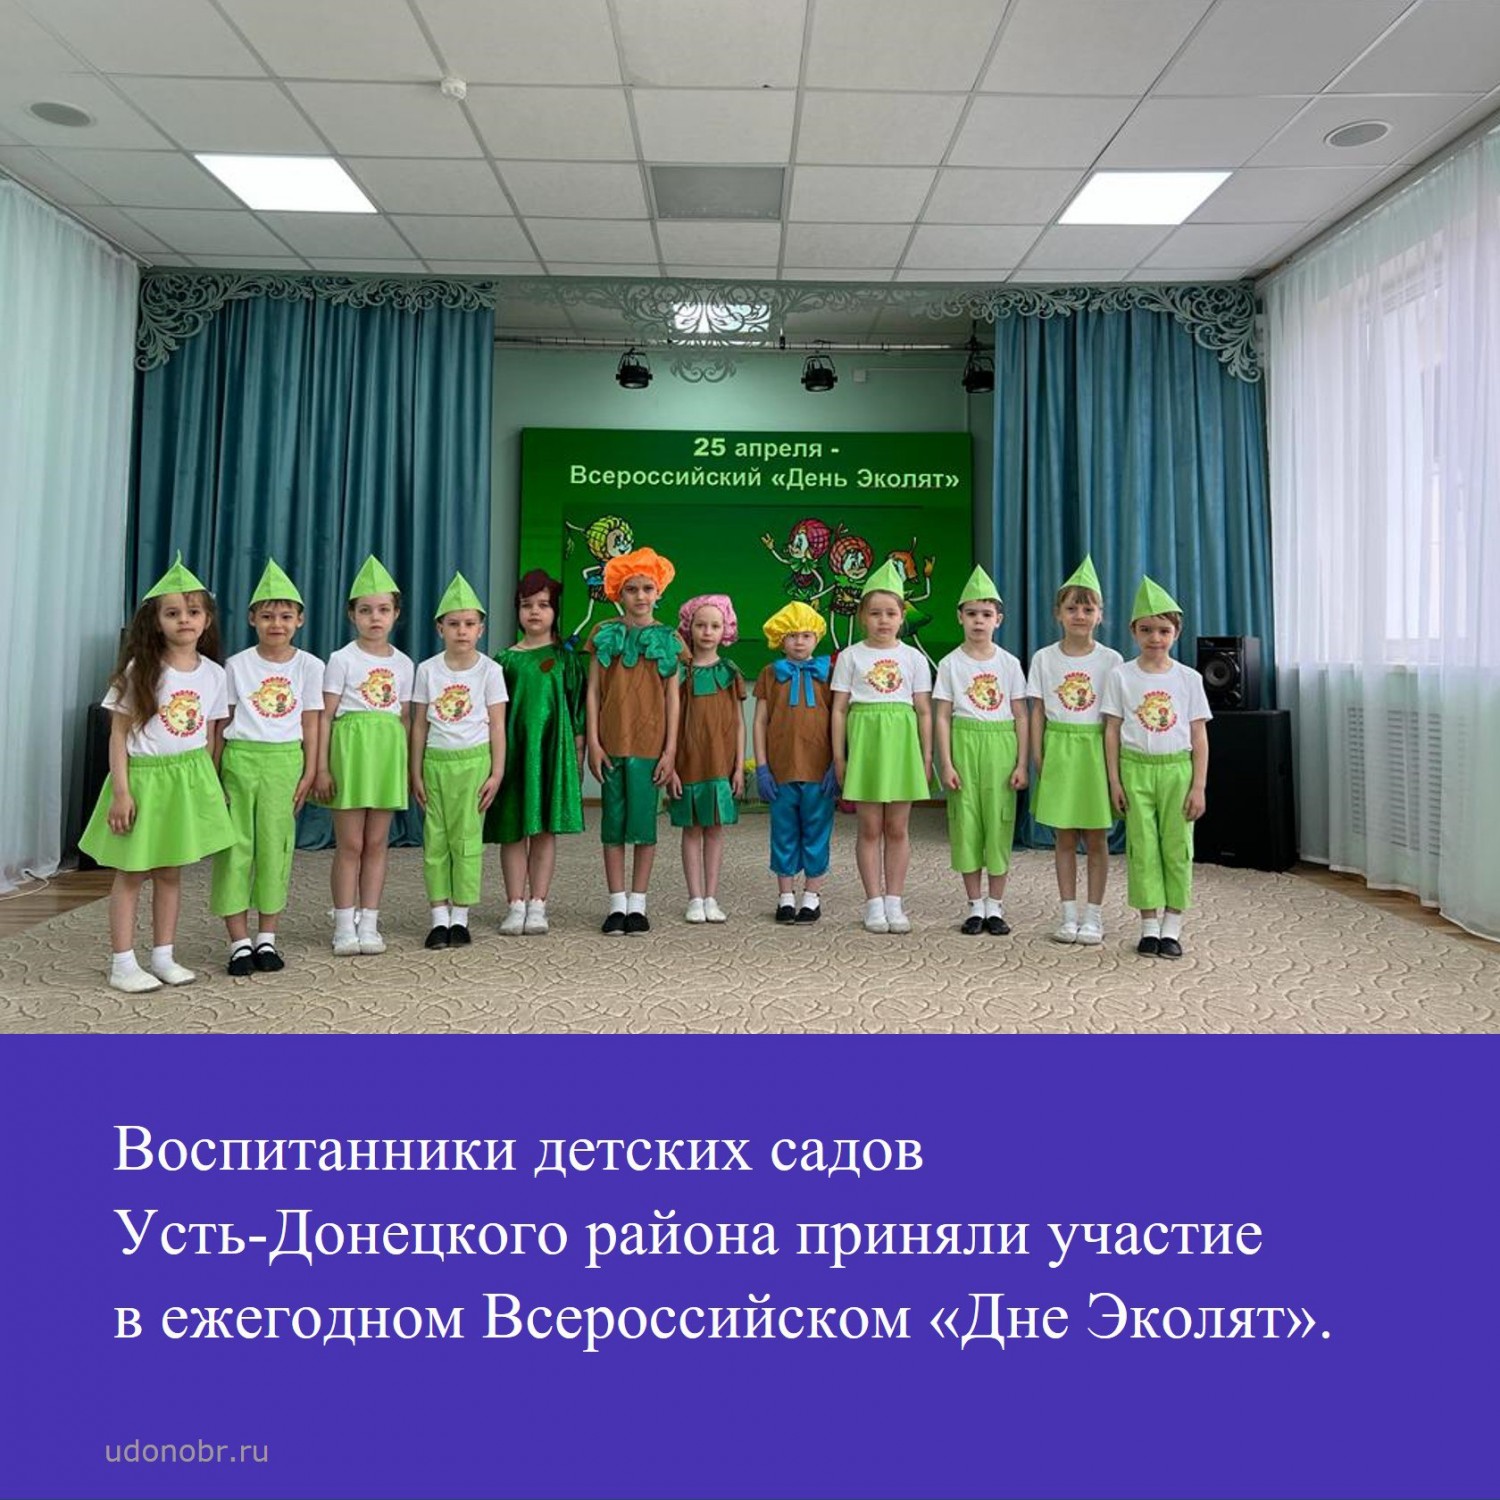 Воспитанники детских садов Усть-Донецкого района приняли участие в ежегодном Всероссийском «Дне Эколят»